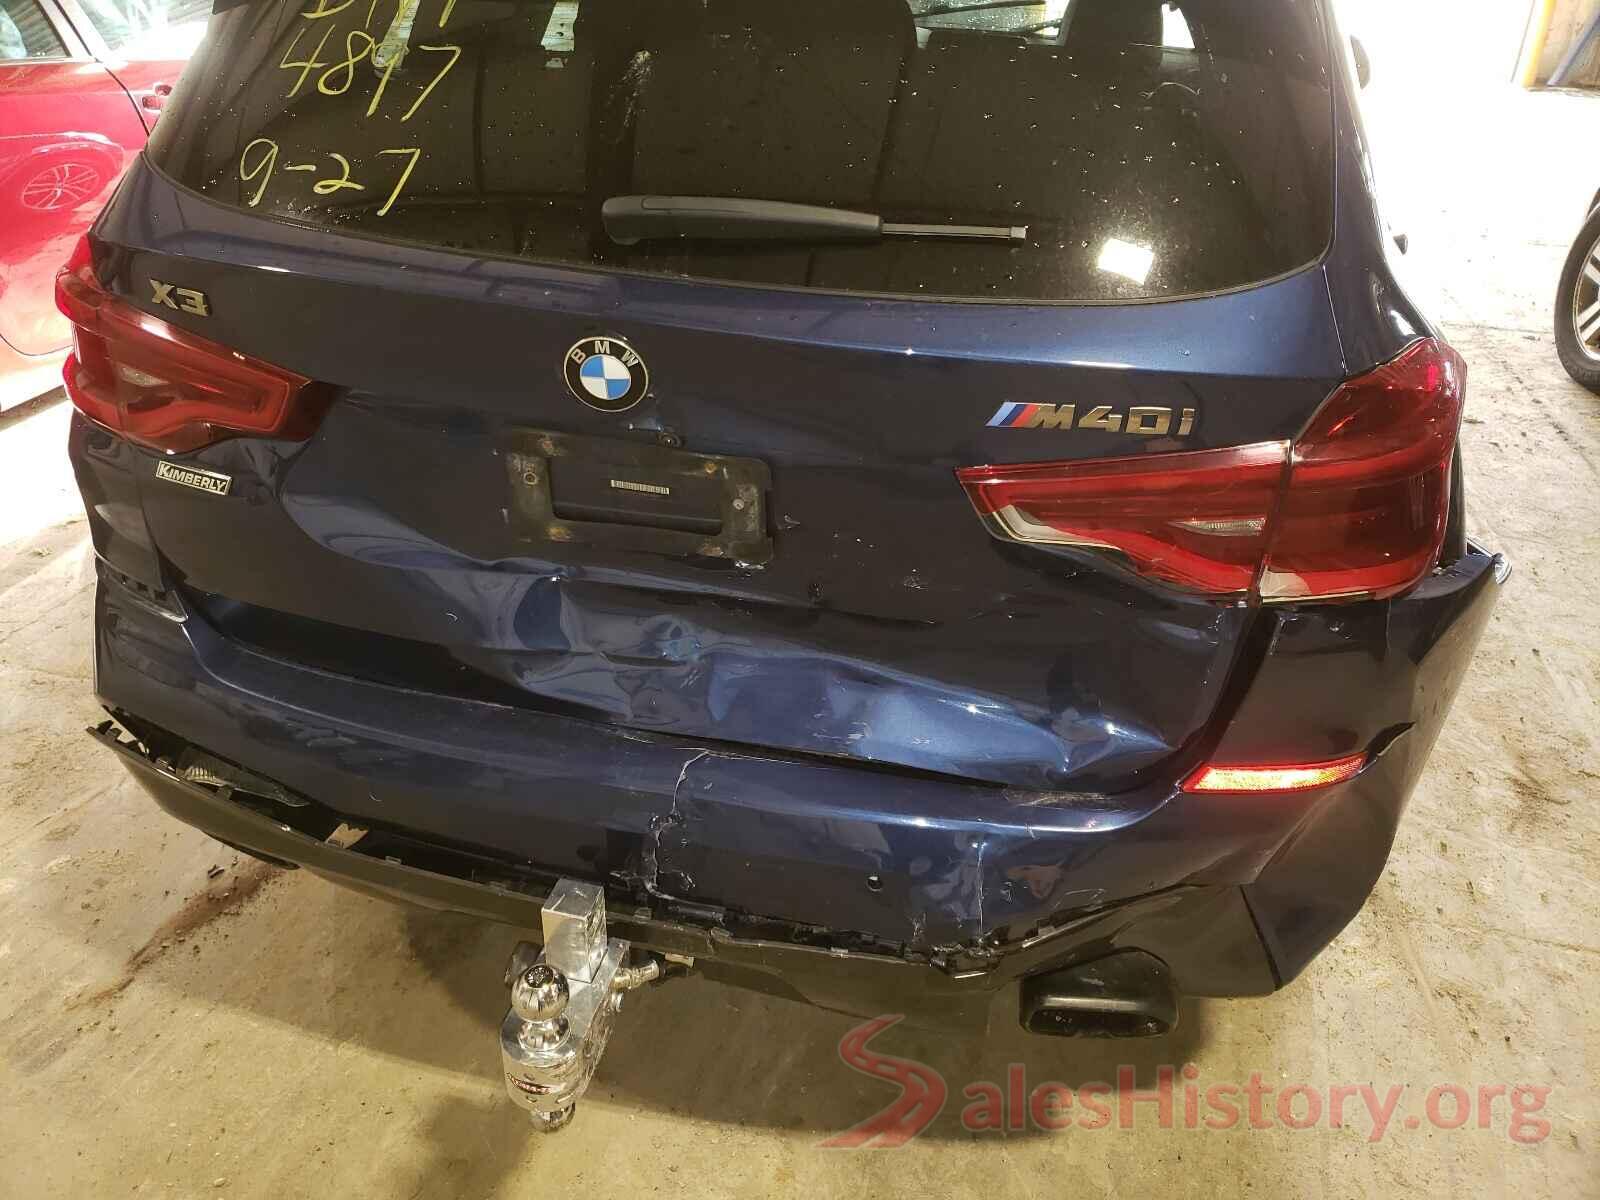 5UXTS3C53J0Y94897 2018 BMW X3